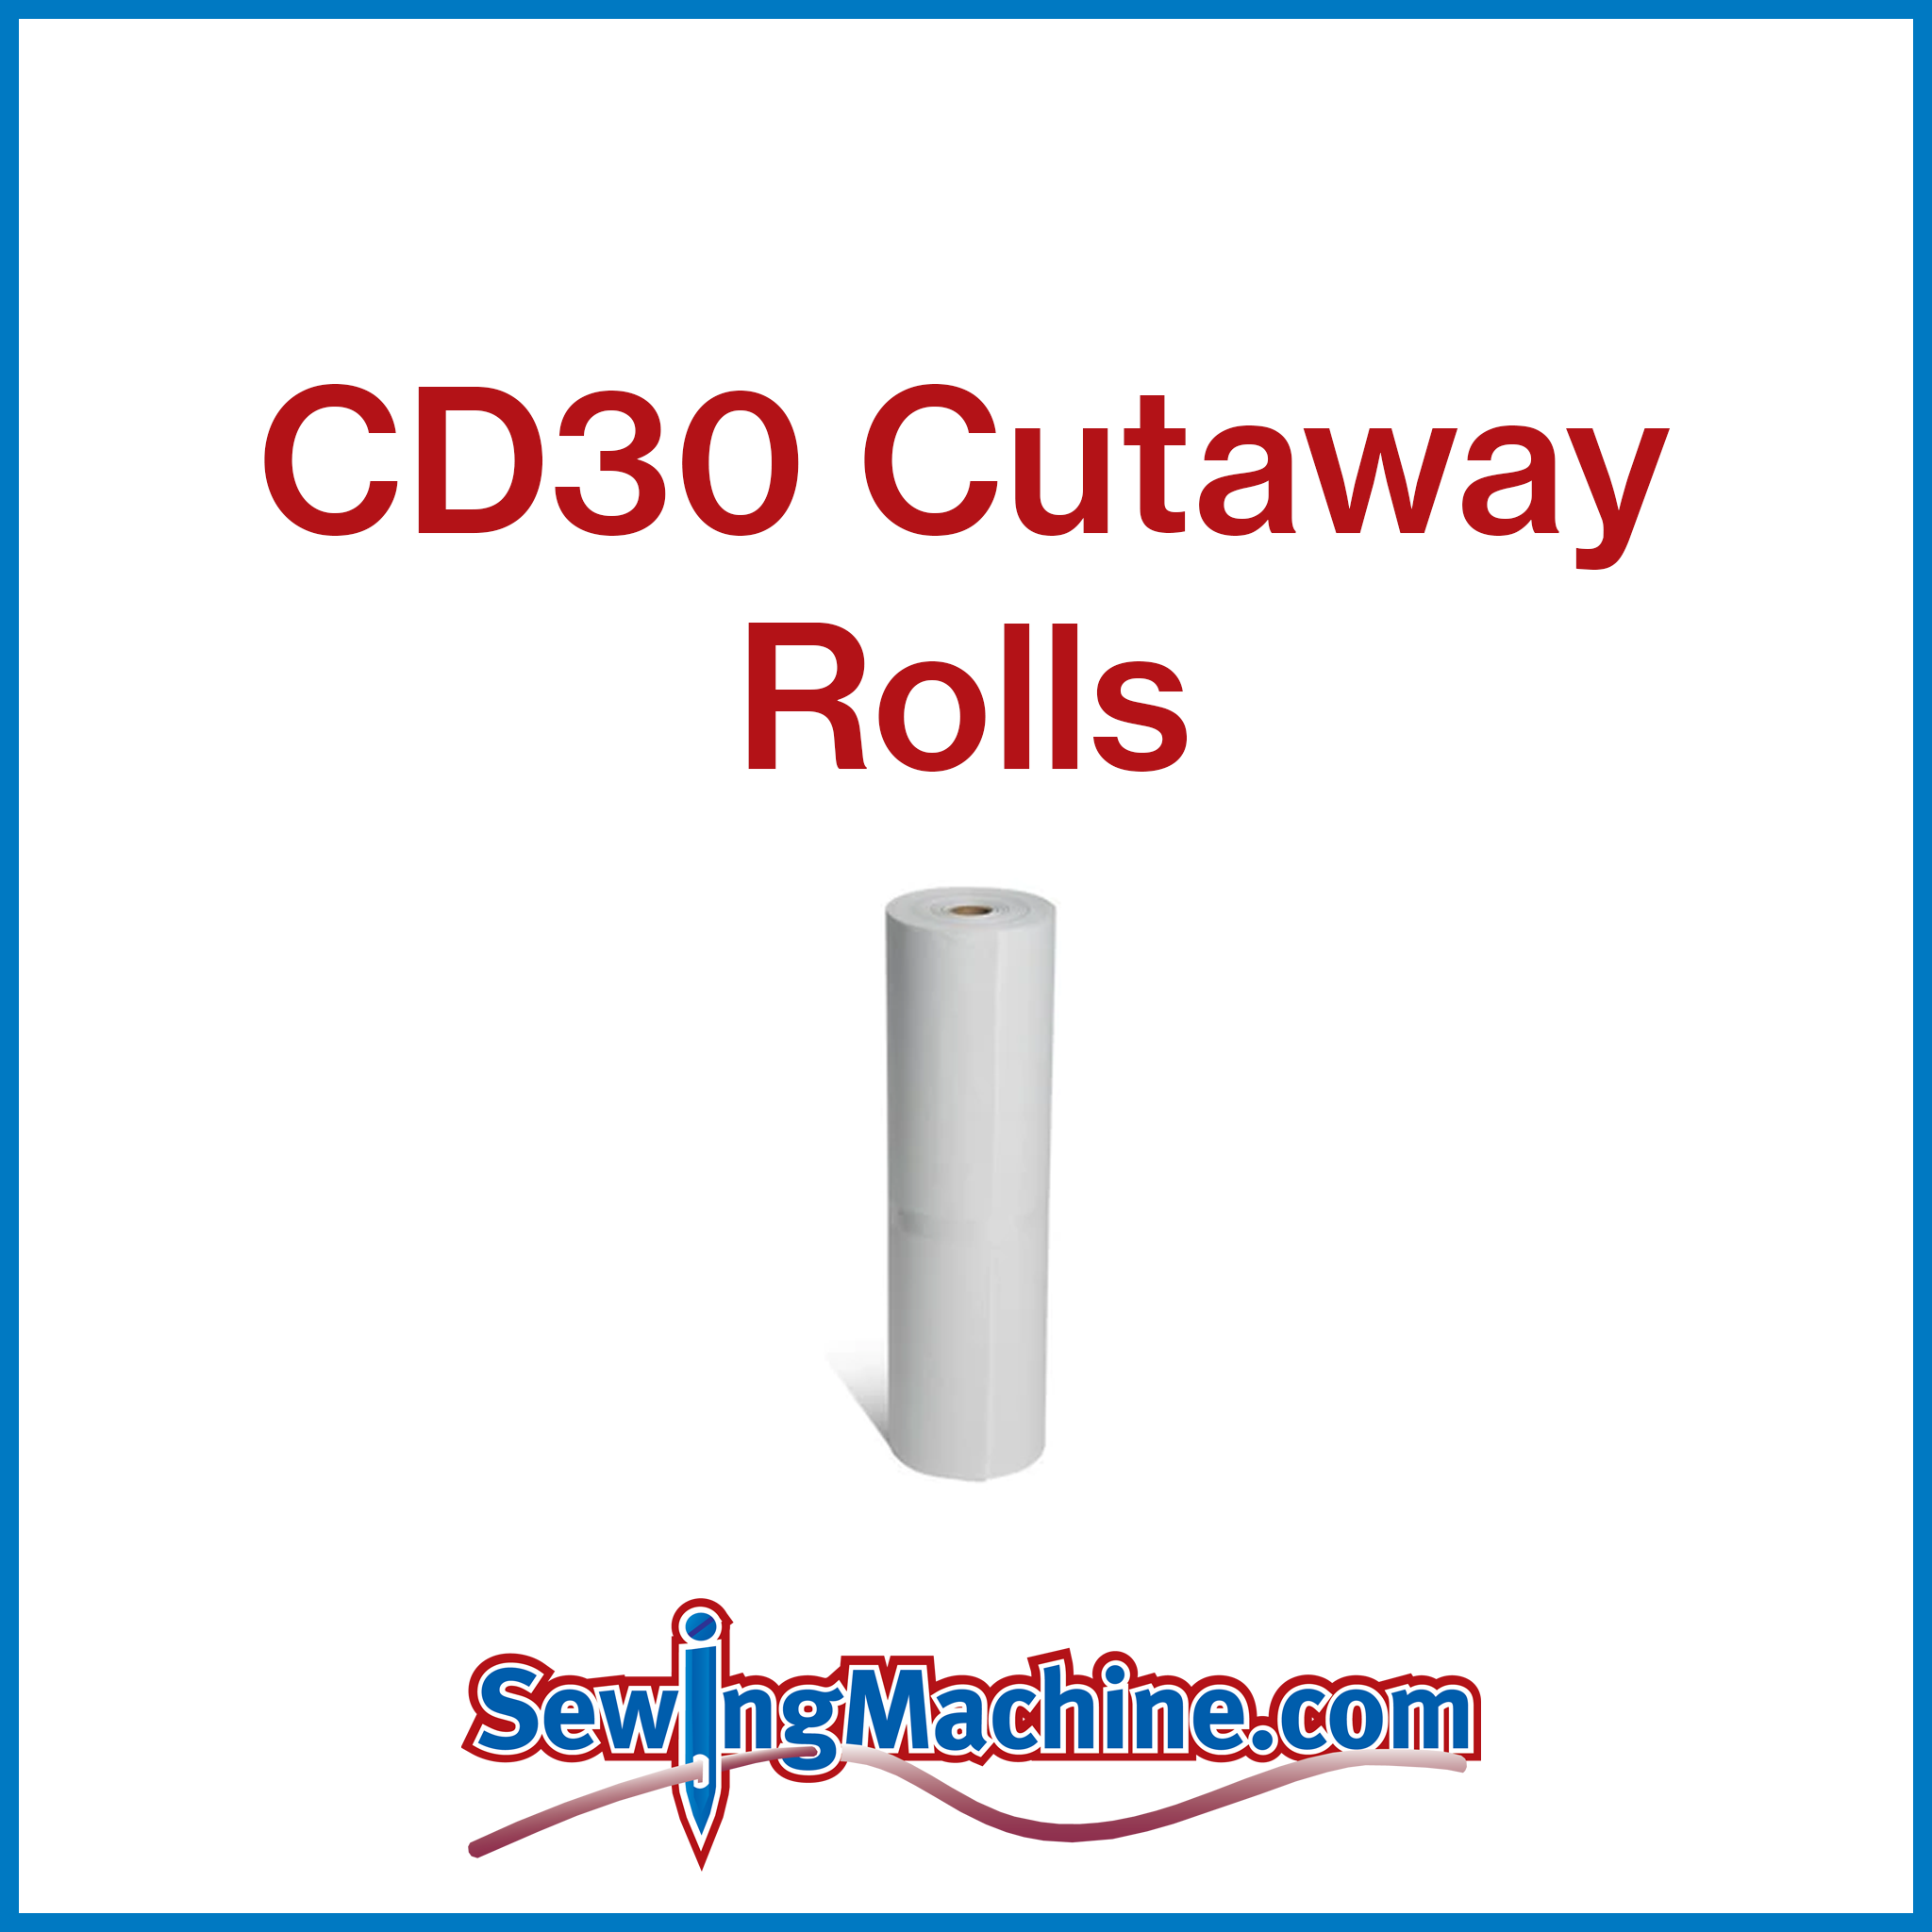 CD30 Cutaway 3.75oz Rolls